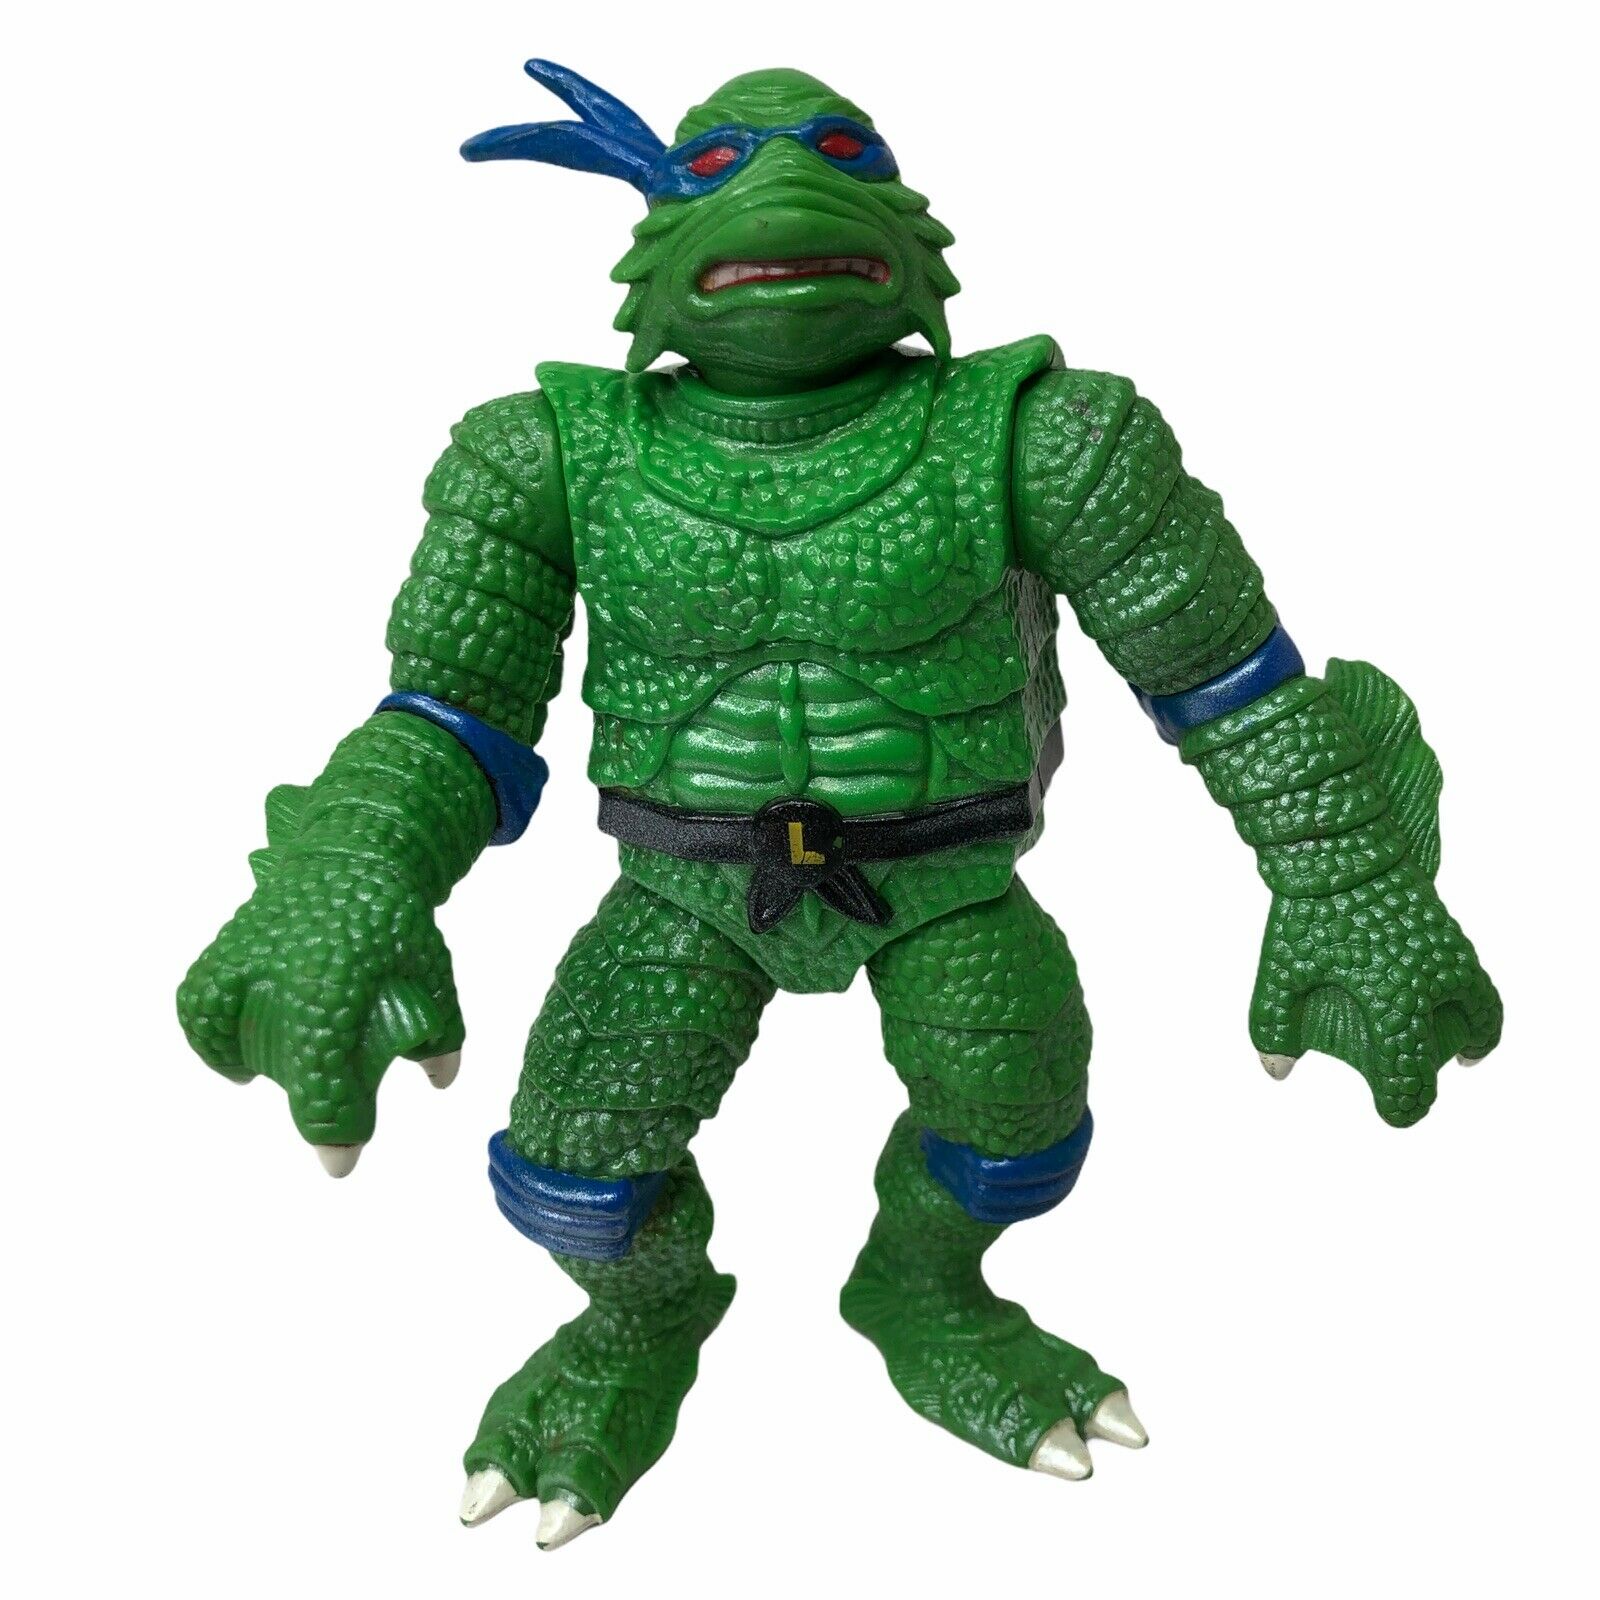 Universal Monster-1994-tmnt-leonardo-creature From The Black Lagoon-ninja Turtle